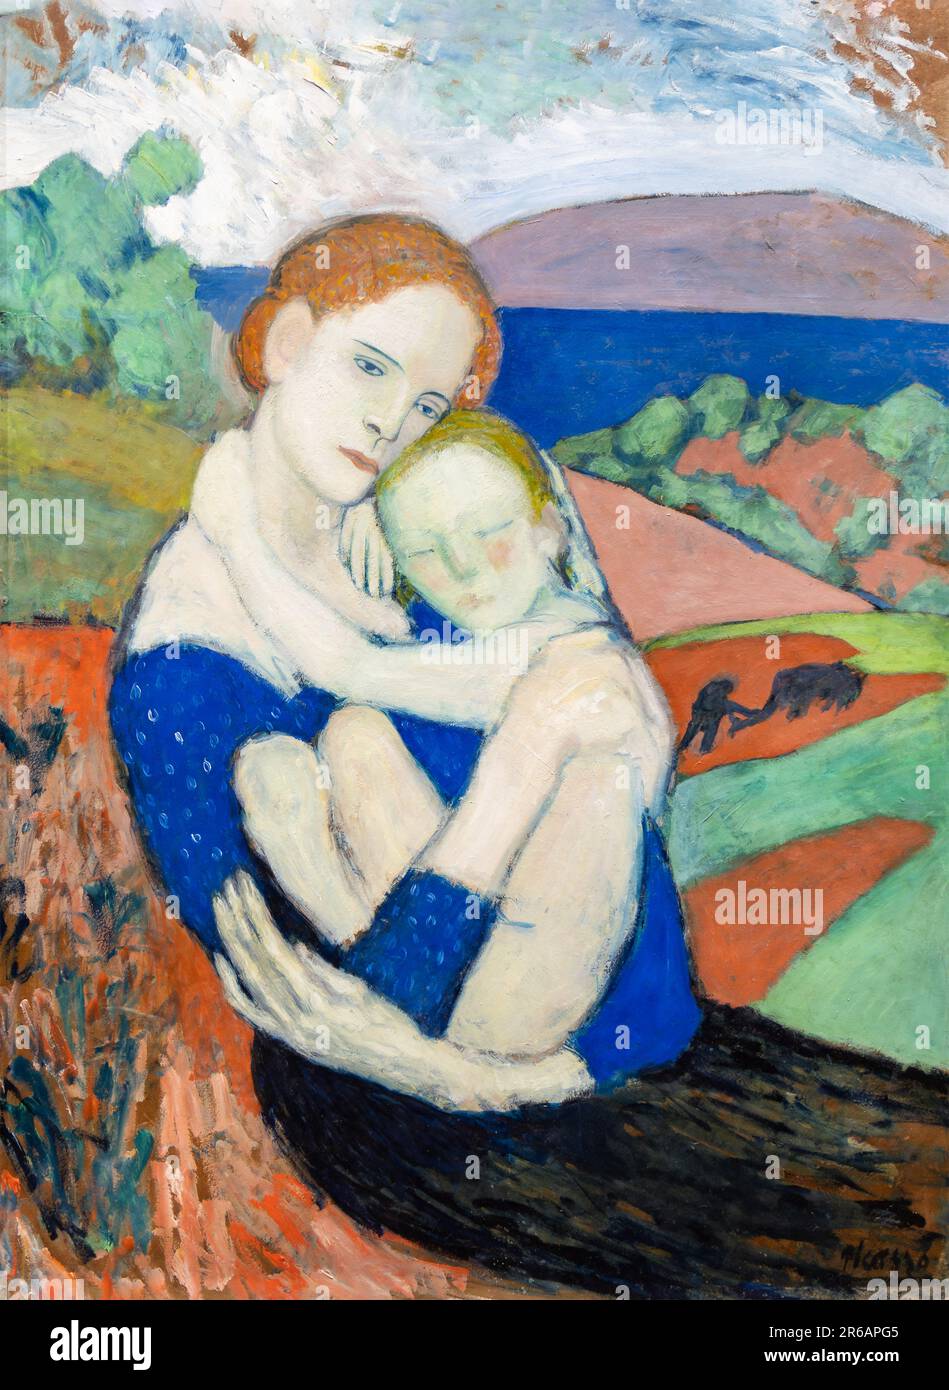 Mutterschaft (La Maternité) von Pablo Picasso. Es wurde 1901 von Pablo Picasso im Post-Impressionismus-Stil erschaffen. Ausgestellt in der Nationalgalerie von Stockfoto